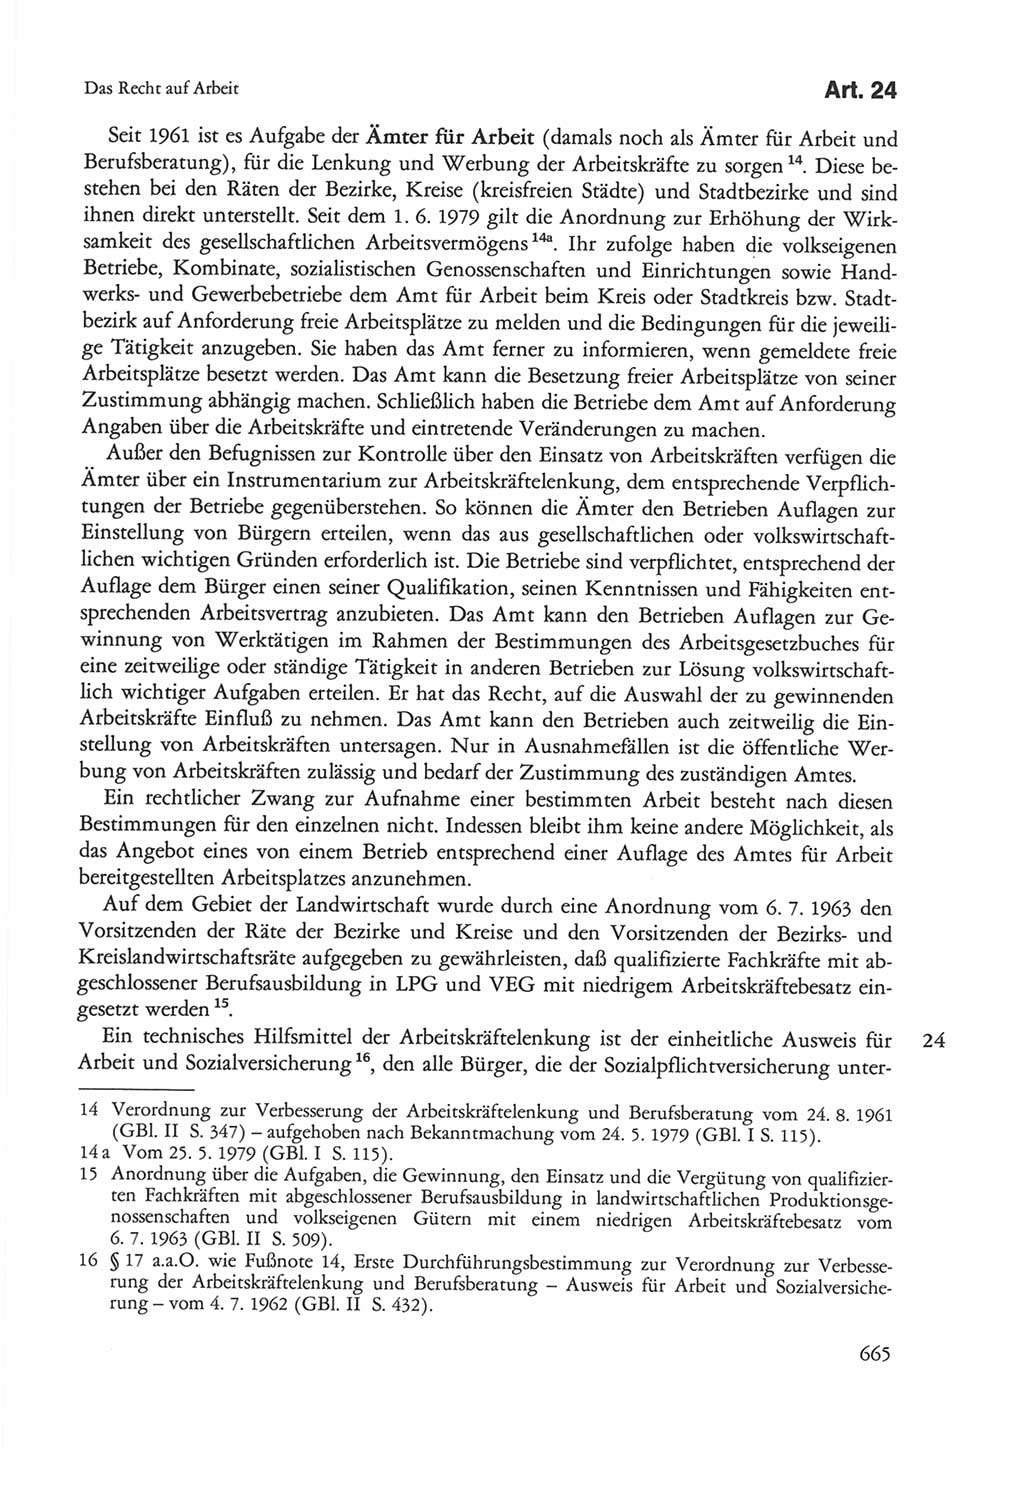 Die sozialistische Verfassung der Deutschen Demokratischen Republik (DDR), Kommentar 1982, Seite 665 (Soz. Verf. DDR Komm. 1982, S. 665)